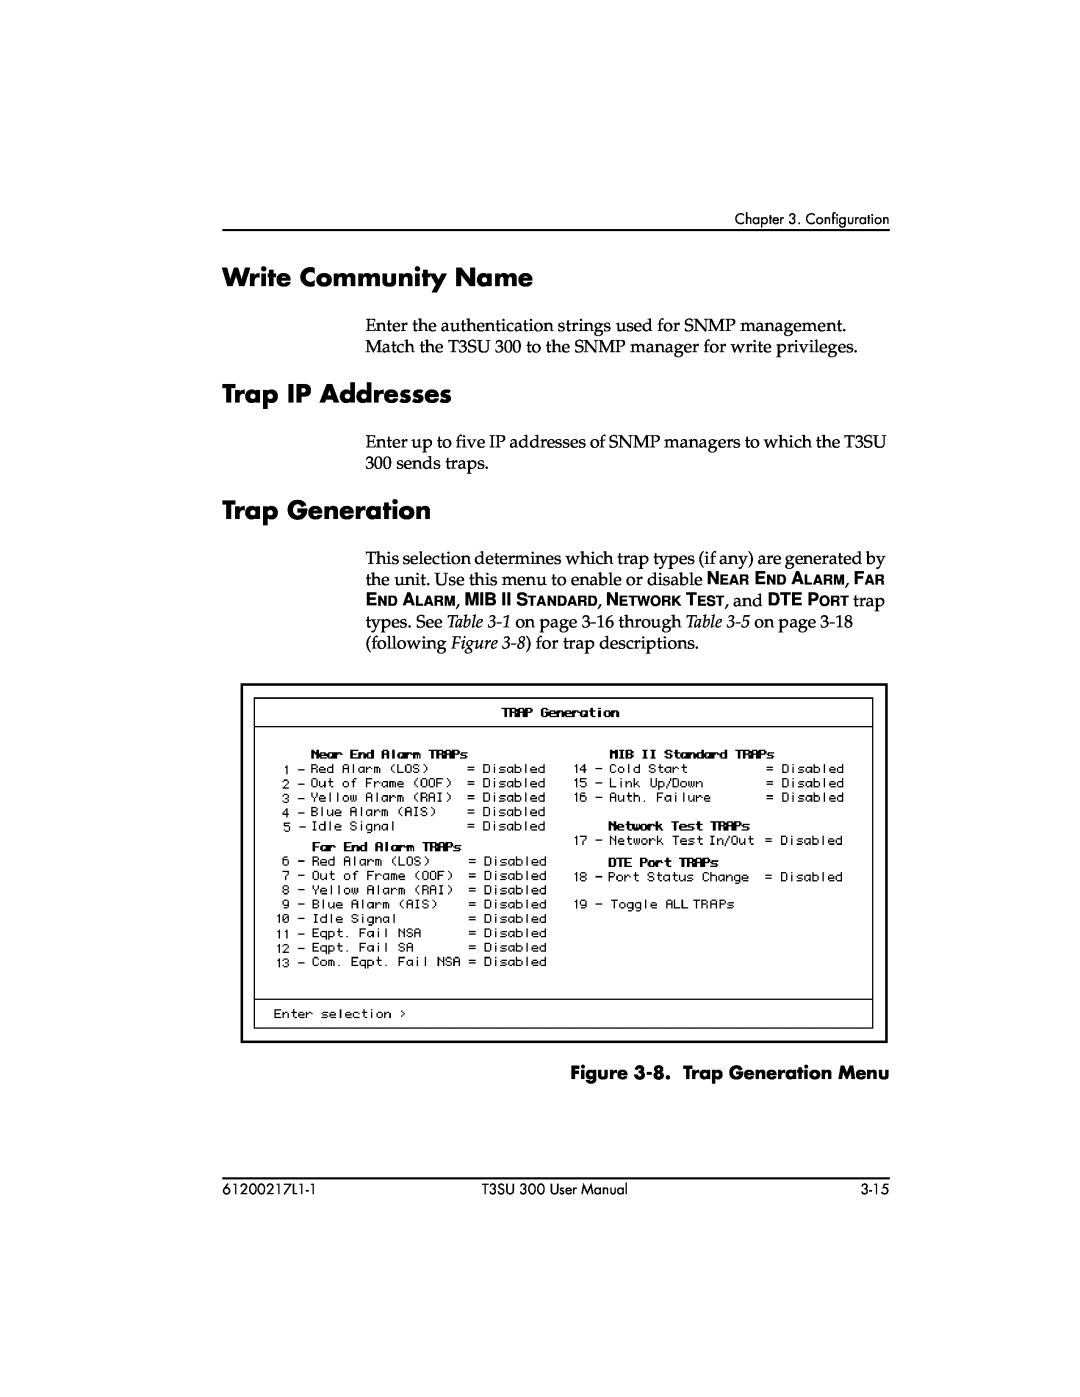 ADTRAN T3SU 300 user manual Write Community Name, Trap IP Addresses, 8. Trap Generation Menu 